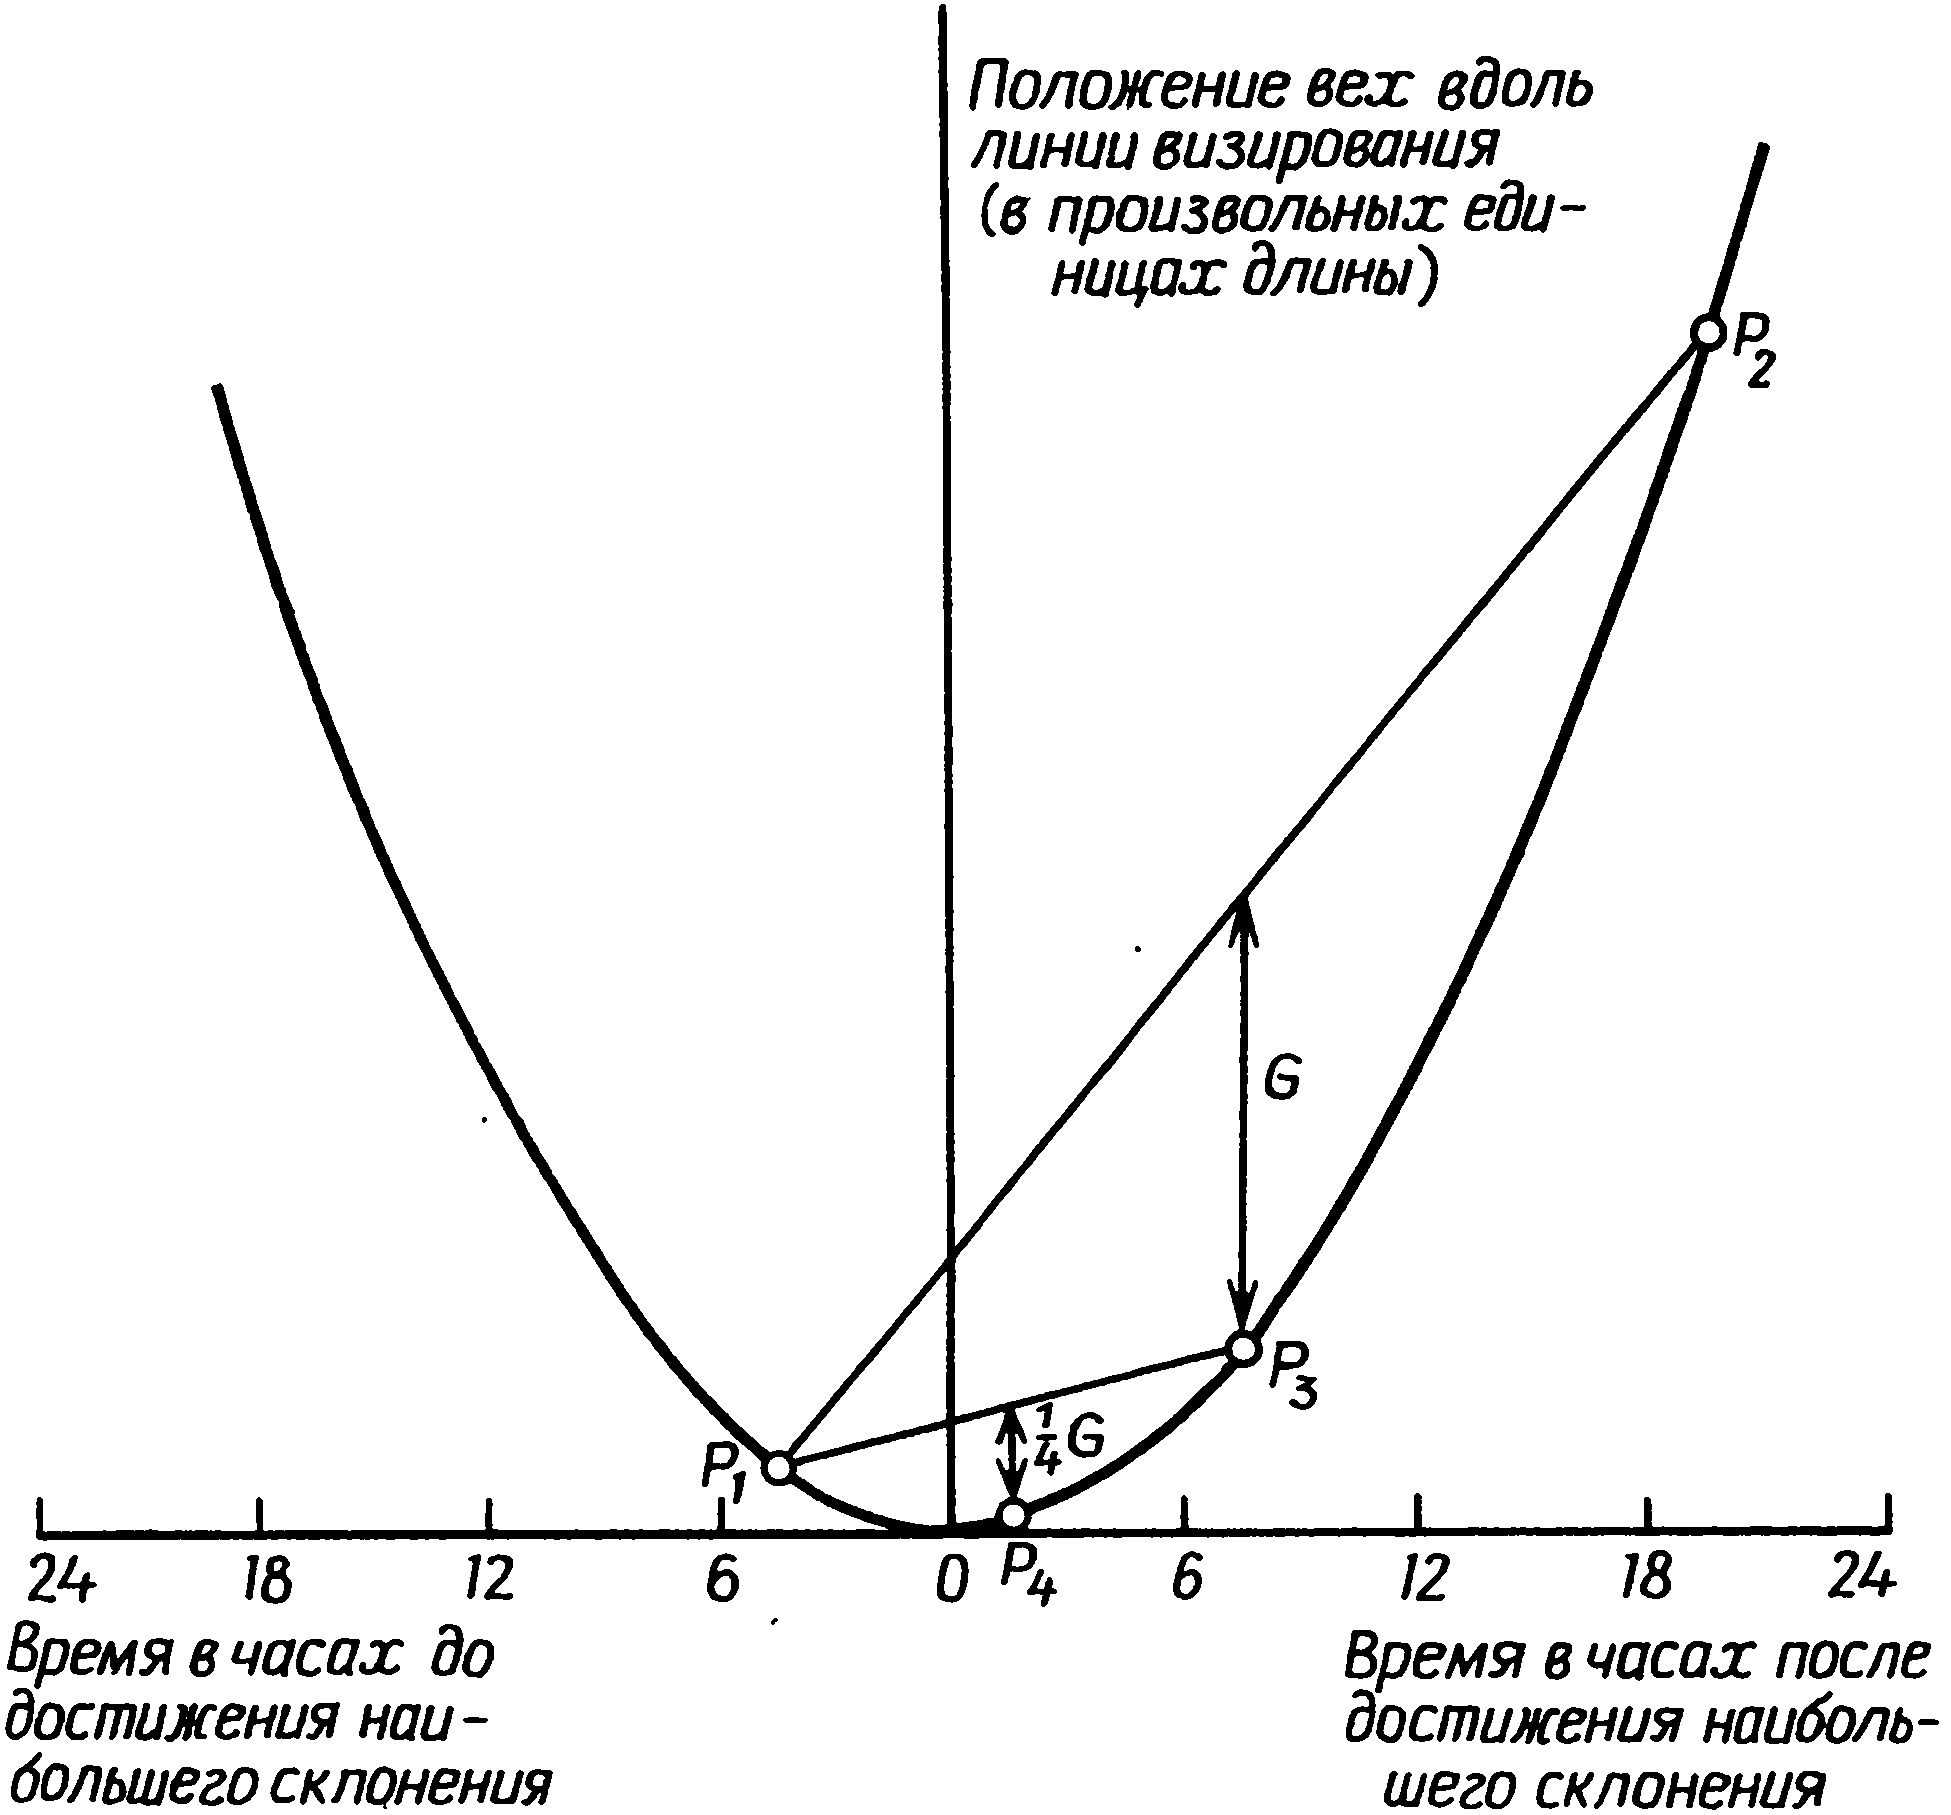 Рис. 7.4. Метод экстраполяции путем последовательного добавления G, G/4, G/16 и т.д.